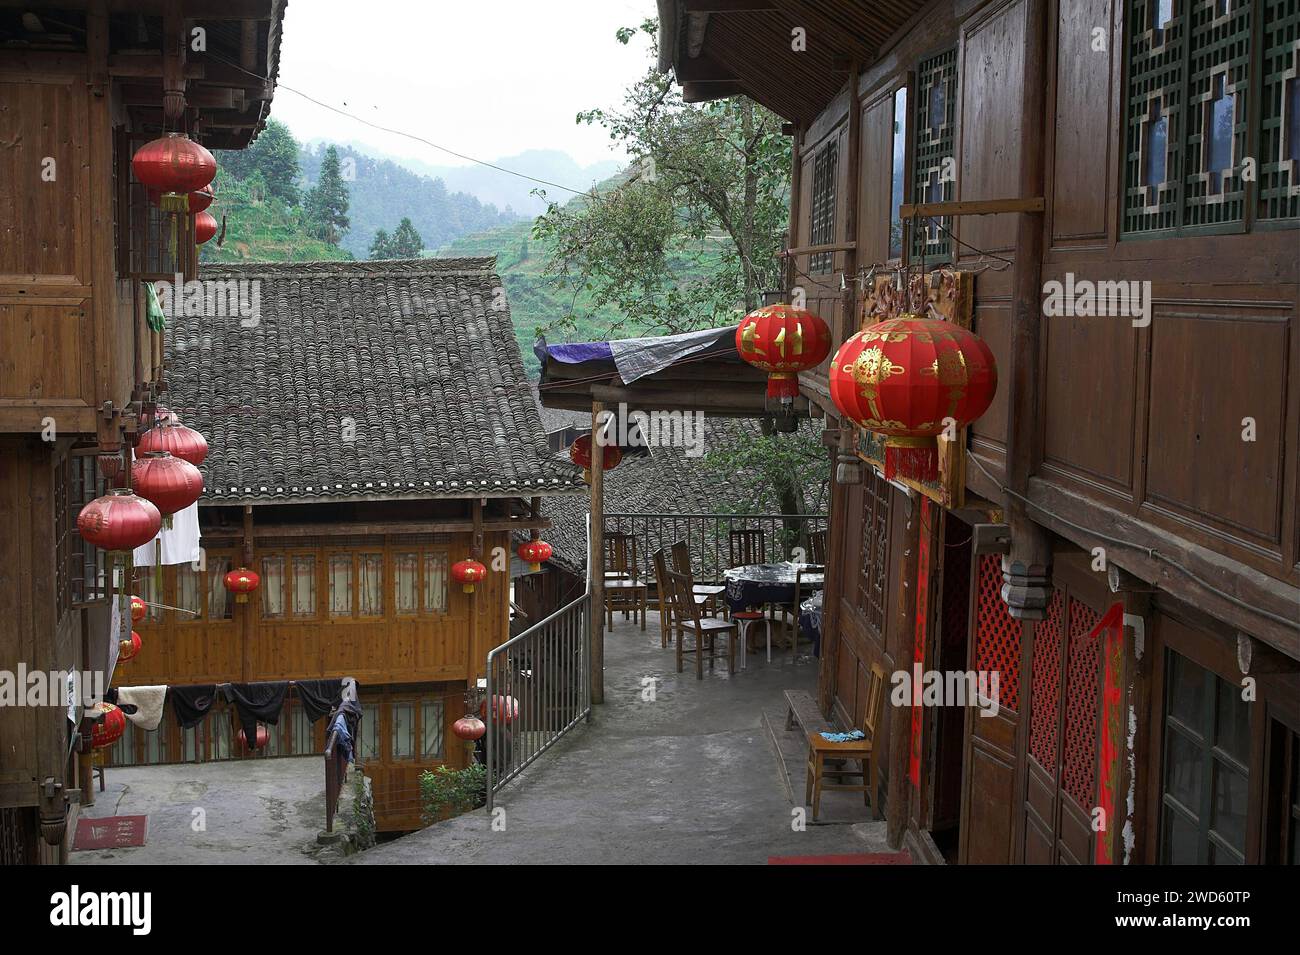 龙胜镇 (龙胜县) 中國 Longsheng, Dazhai Longji Ping'an Zhuang, Chine ; restaurant dans un village chinois ; Restaurant im chinesischen Dorf Banque D'Images